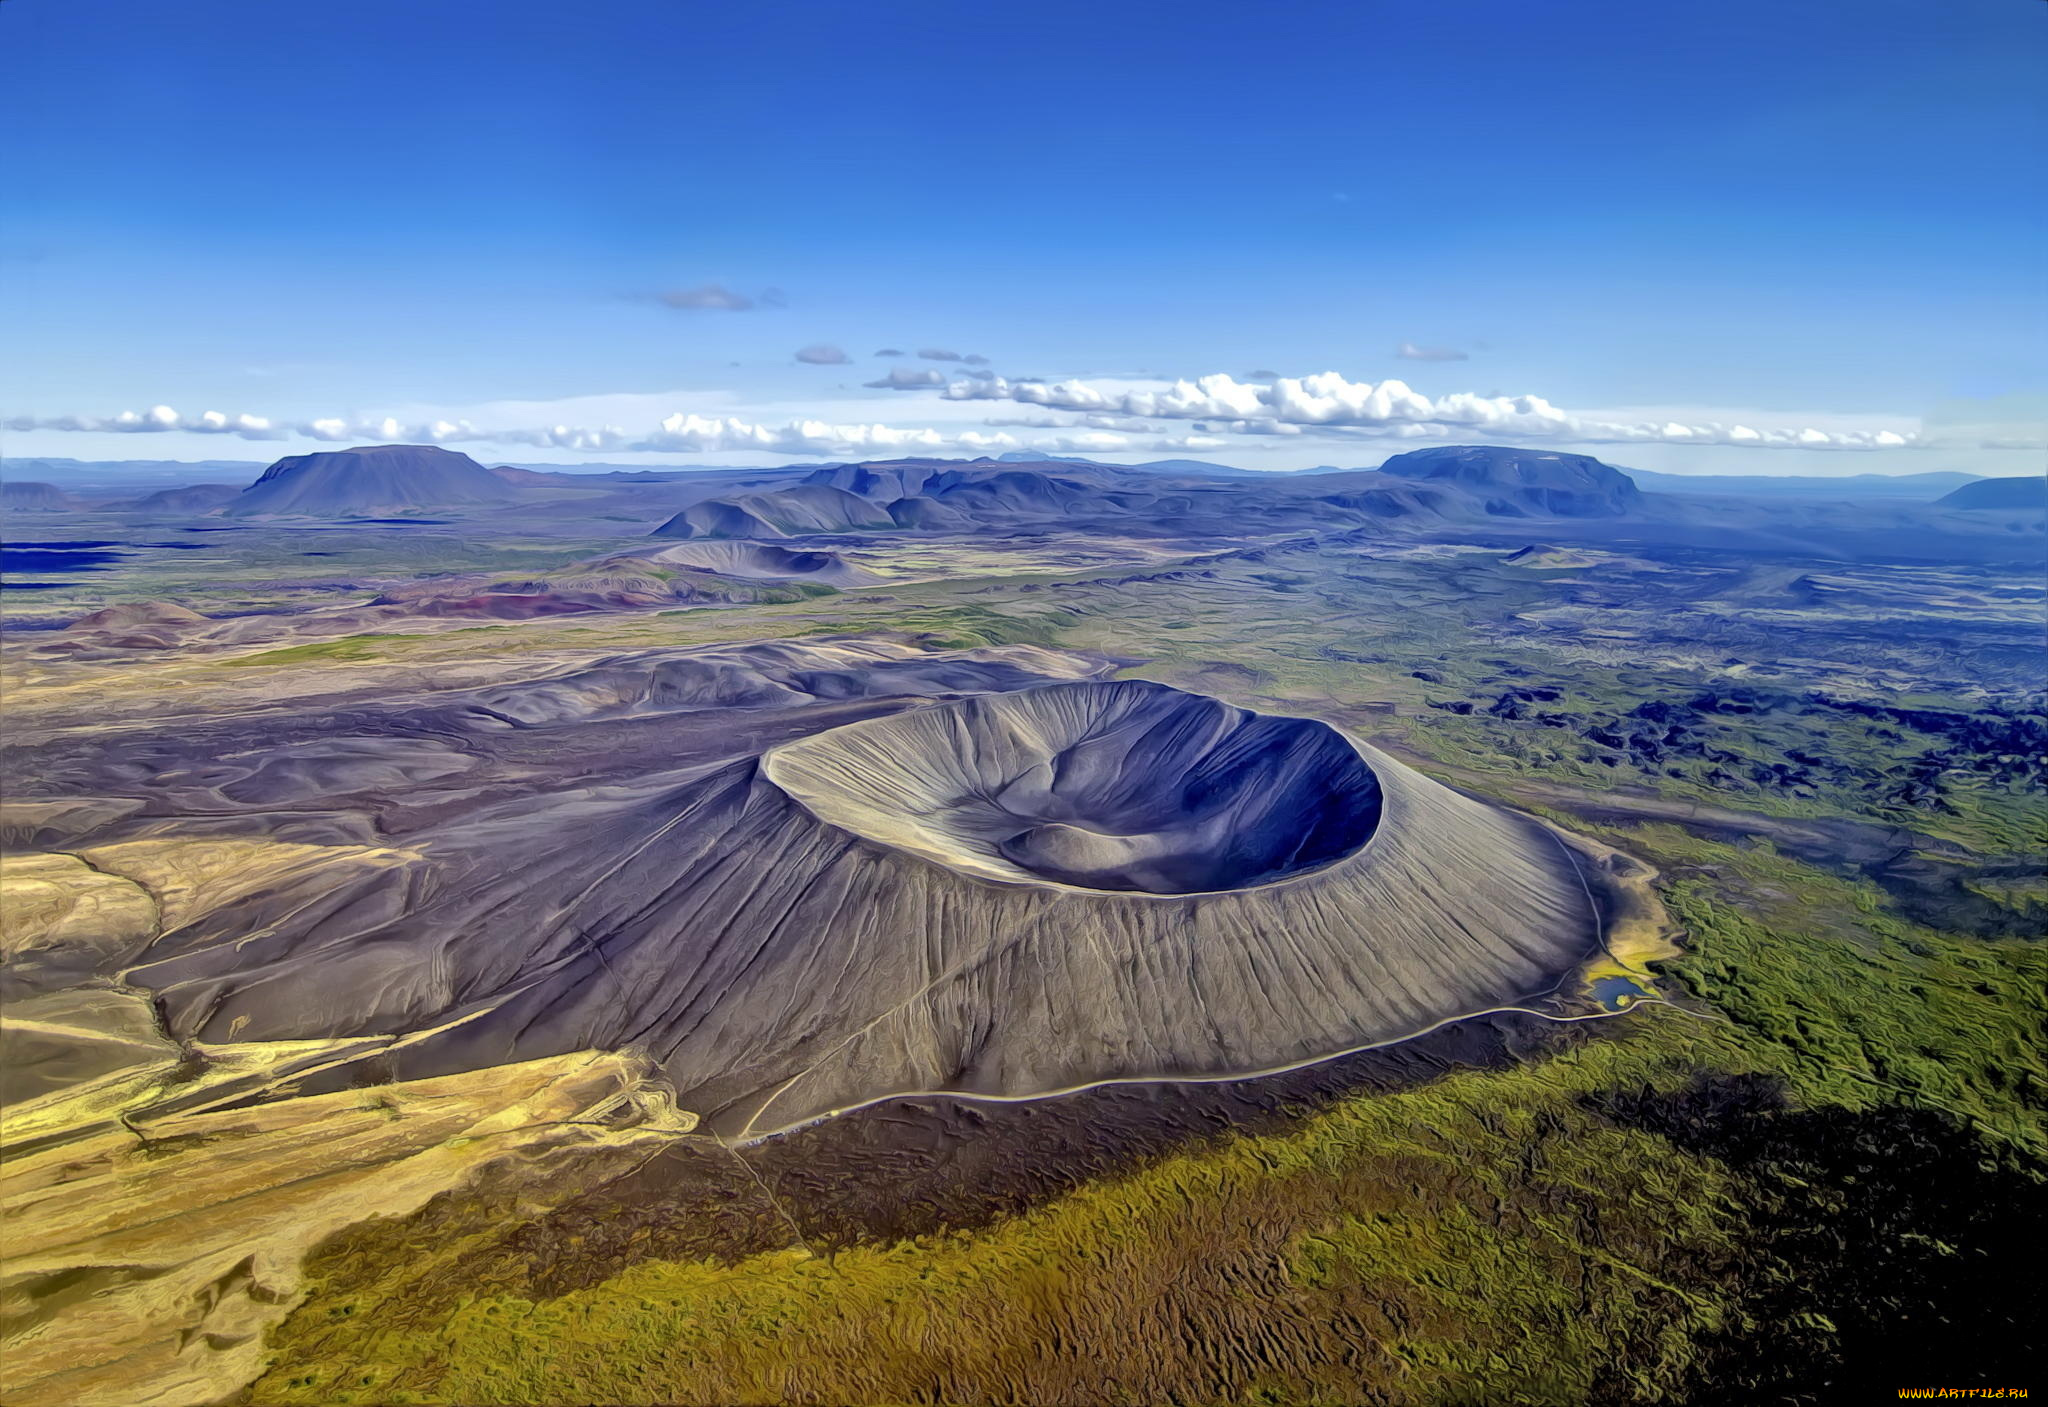 Самый большой географический объект в мире. Исландия вулканическое плоскогорье. Альбан Хиллз вулкан. "Нагорье гигантских кратеров Танзания". Лавовое плато Исландия.